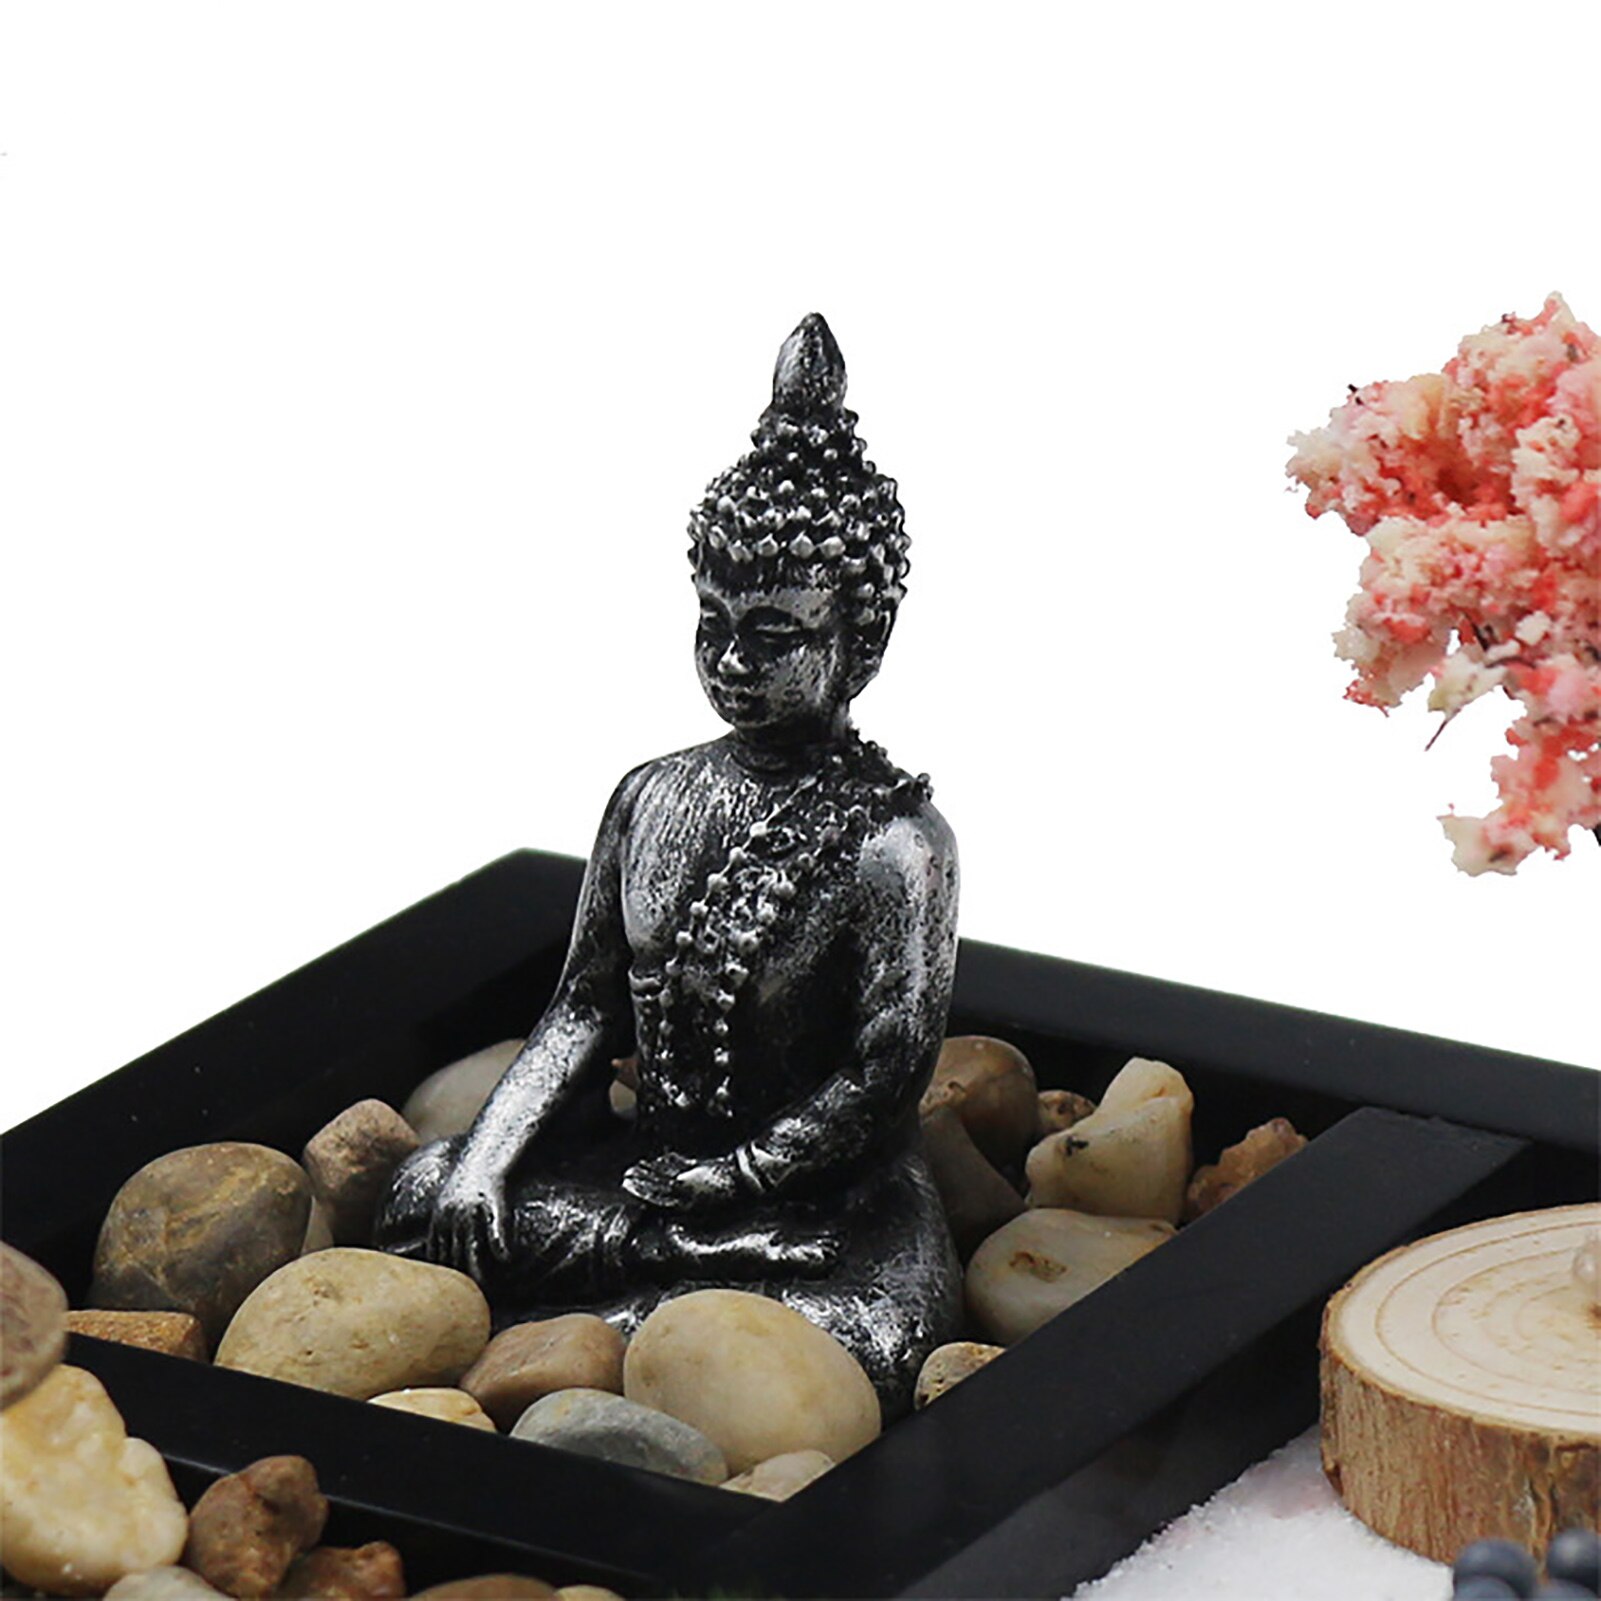 Japanese Zen Sand Garden Tabletop Mini Zen Garden Kit For Home Office Tabletop Decor For Concentration Relaxation Meditation 4